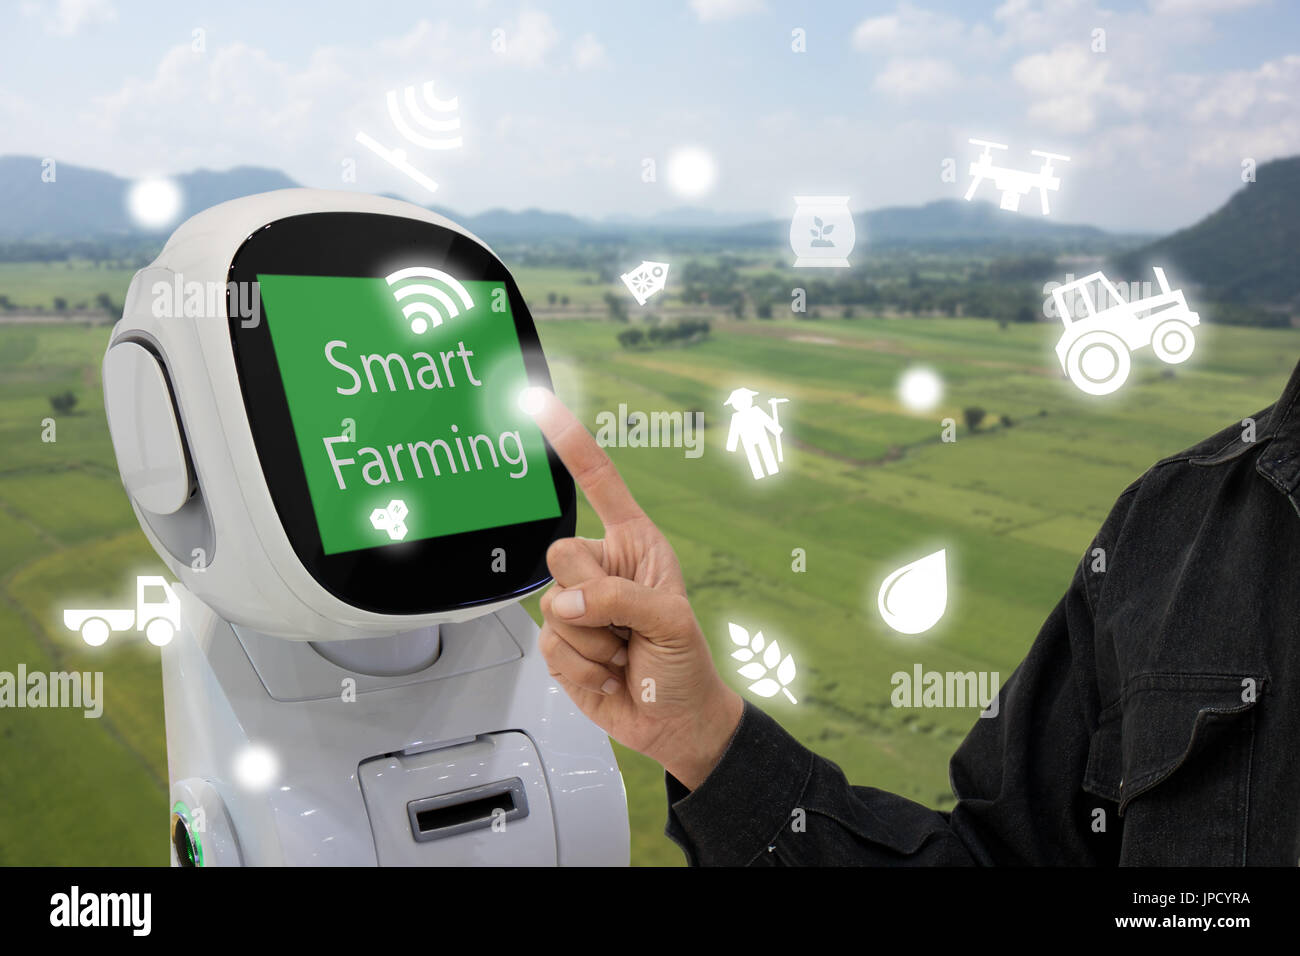 Iot, internet de las cosas, el concepto de agricultura, agricultor usar smart robot para ayudar a monitor de control y administración, incluida el agua de alimentación, fertilizantes, chemi Foto de stock